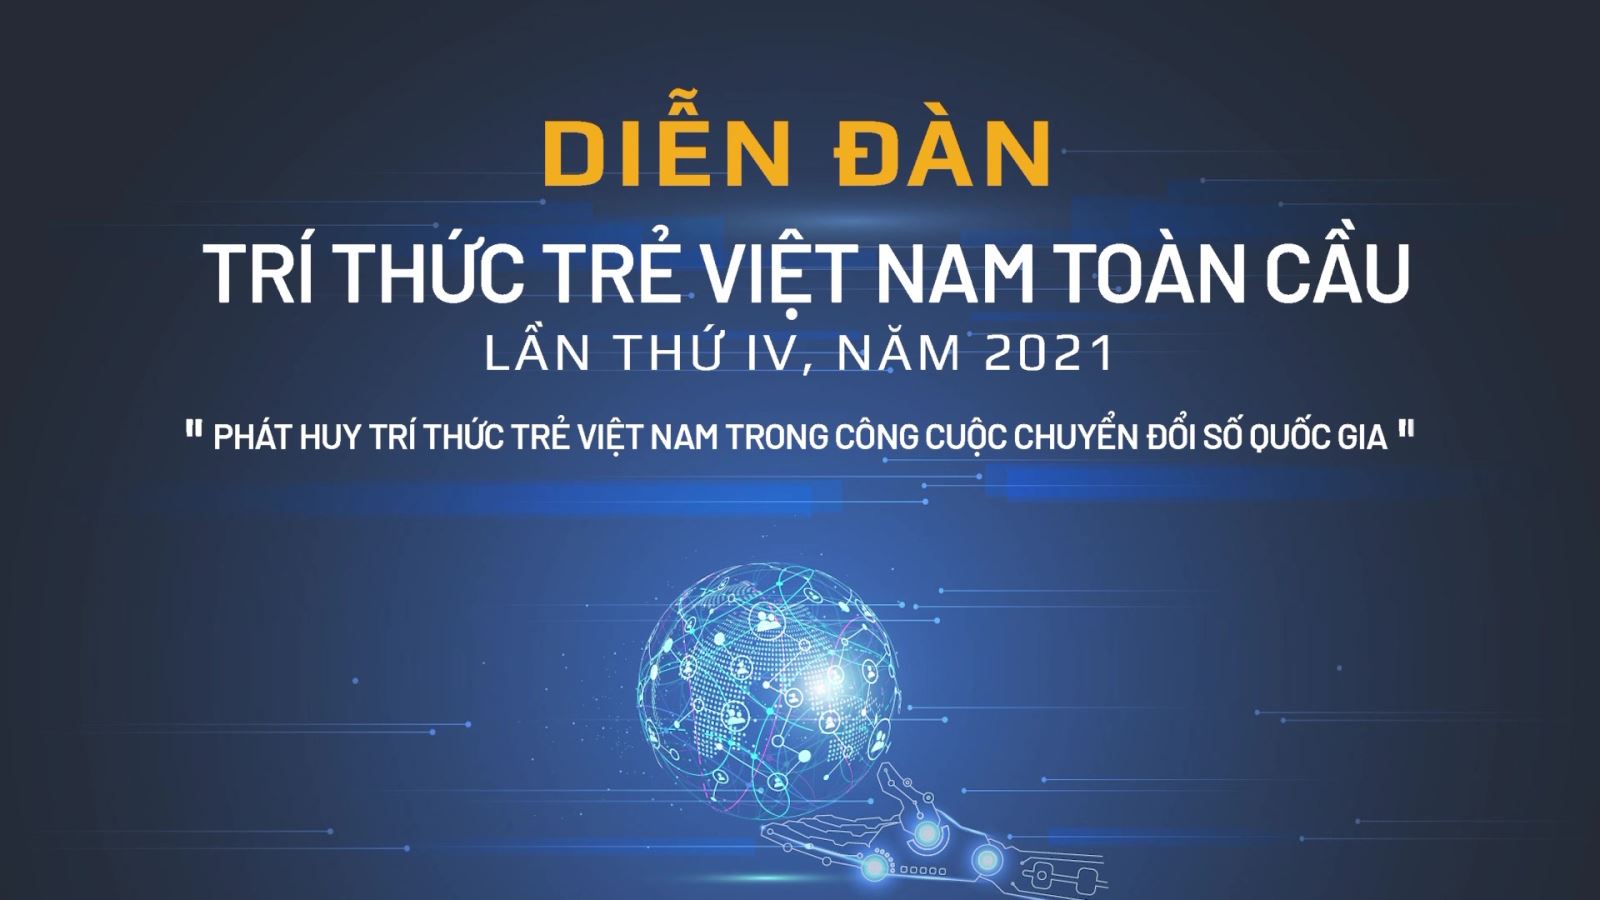 177 đại biểu sẽ tham dự Diễn đàn trí thức trẻ Việt Nam toàn cầu lần IV